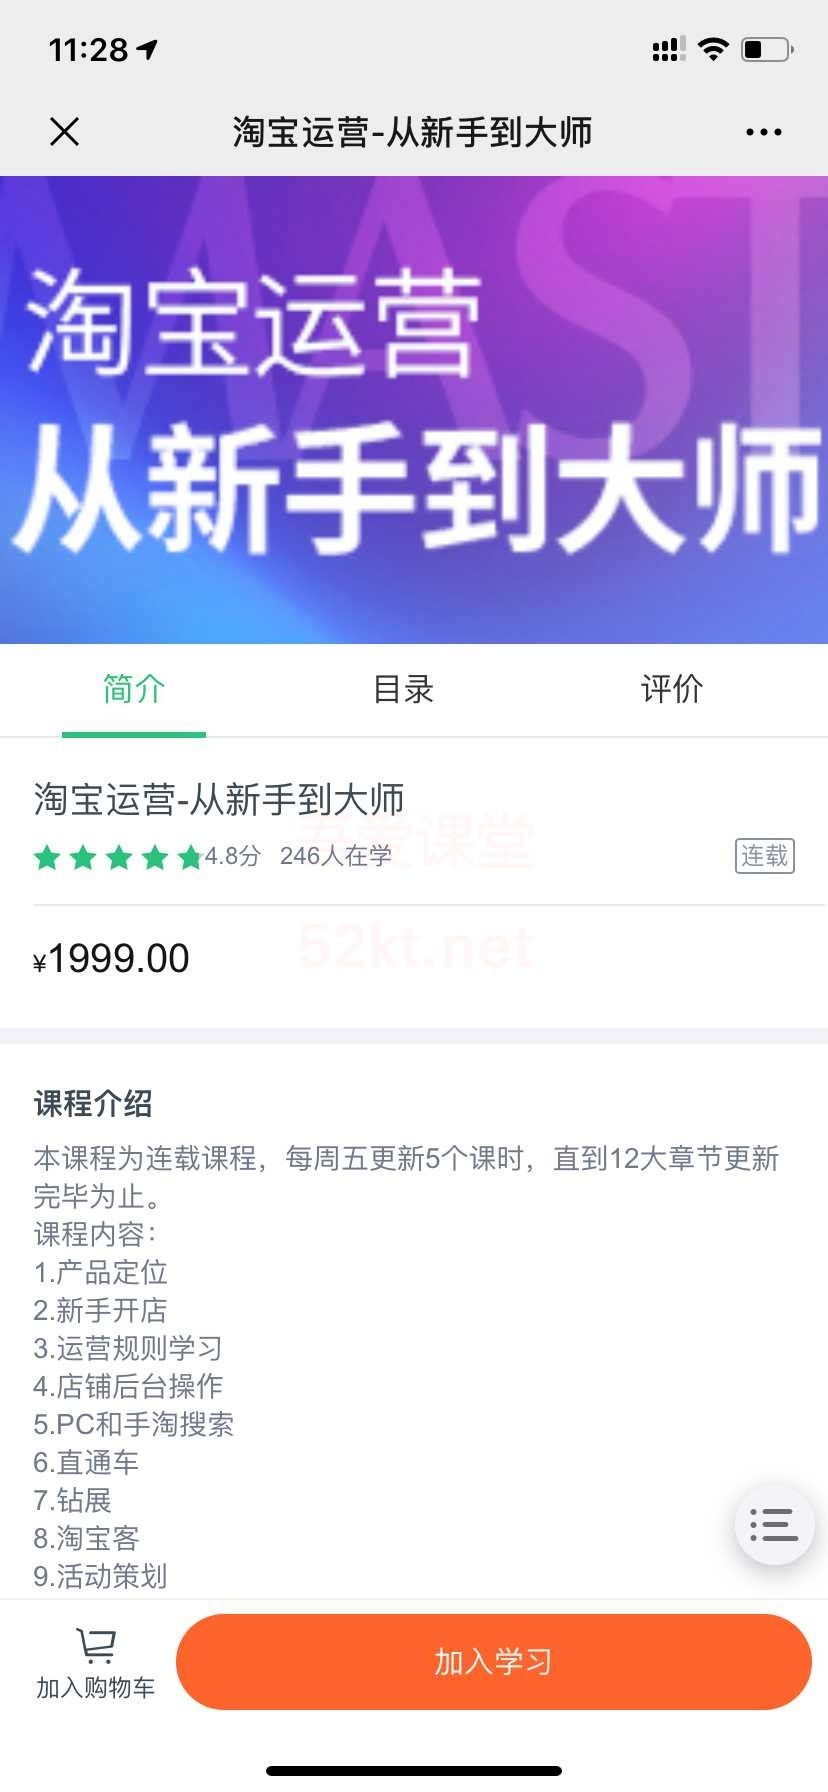 2019从新手到大师淘宝运营教程网易云价值1999元【完结】